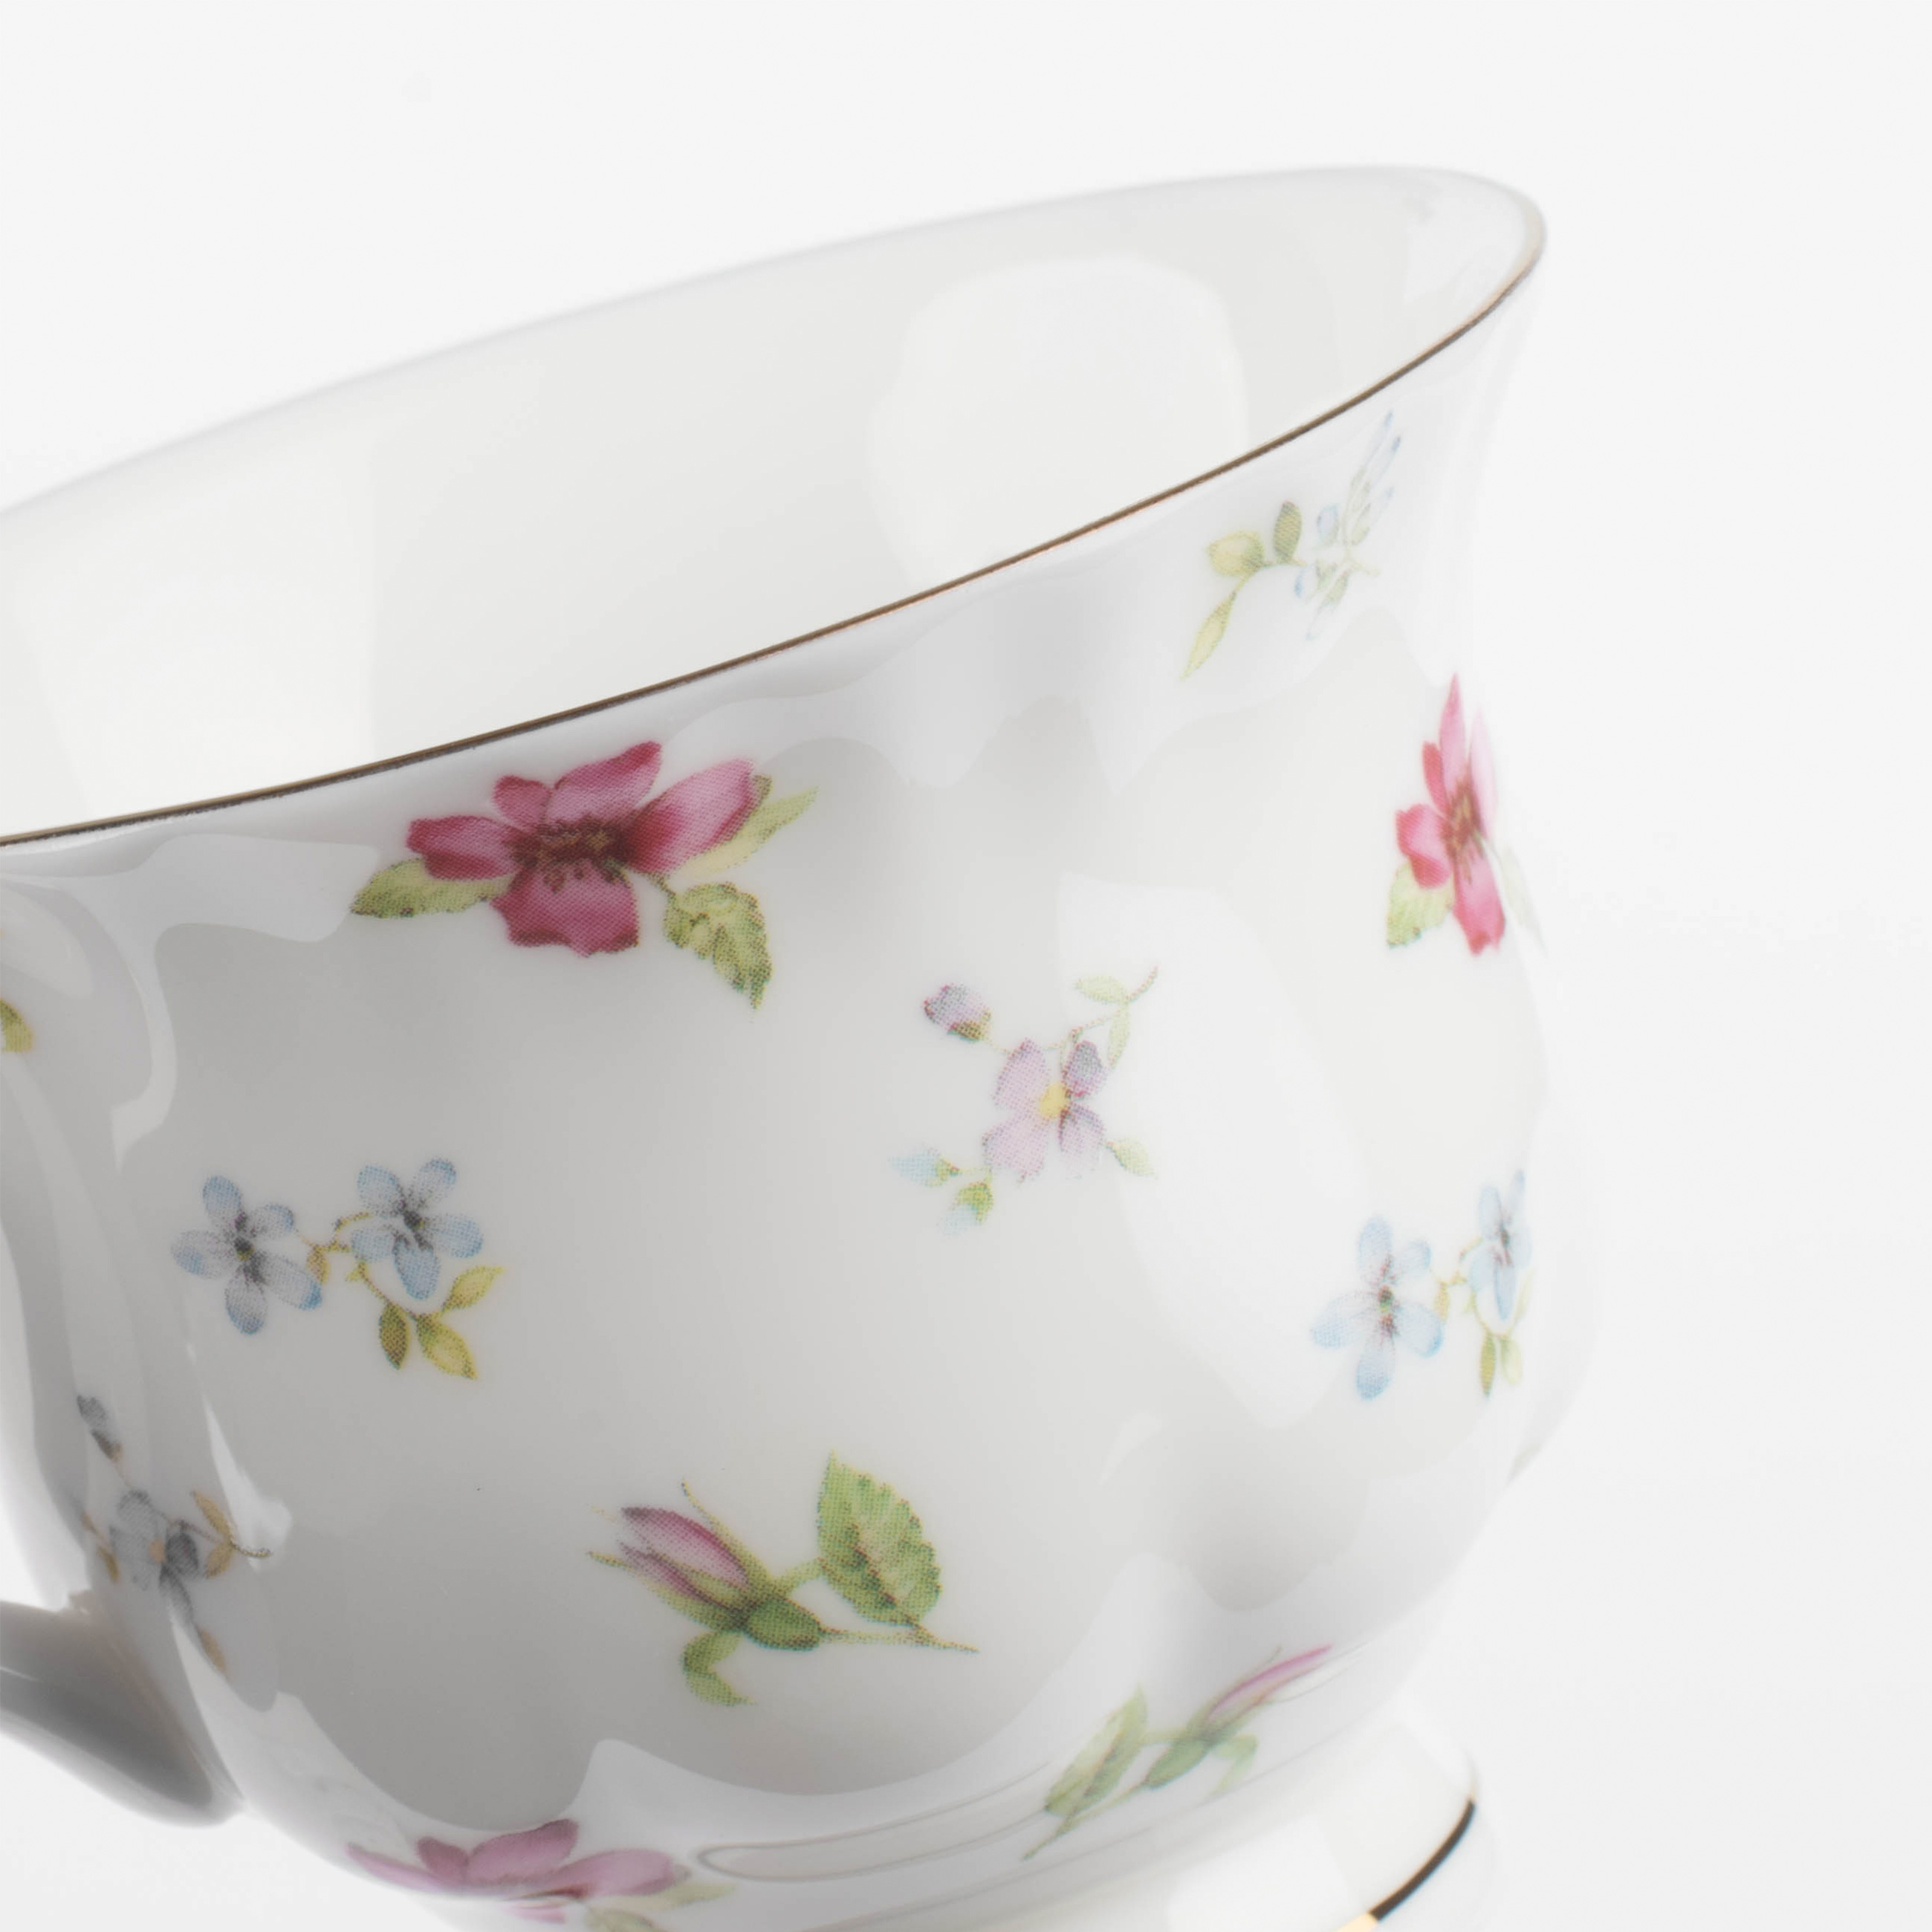 Пара чайная, 1 перс, 2 пр, 220 мл, фарфор F, белая, с золотистым кантом, Цветы, Delicate flowers изображение № 4